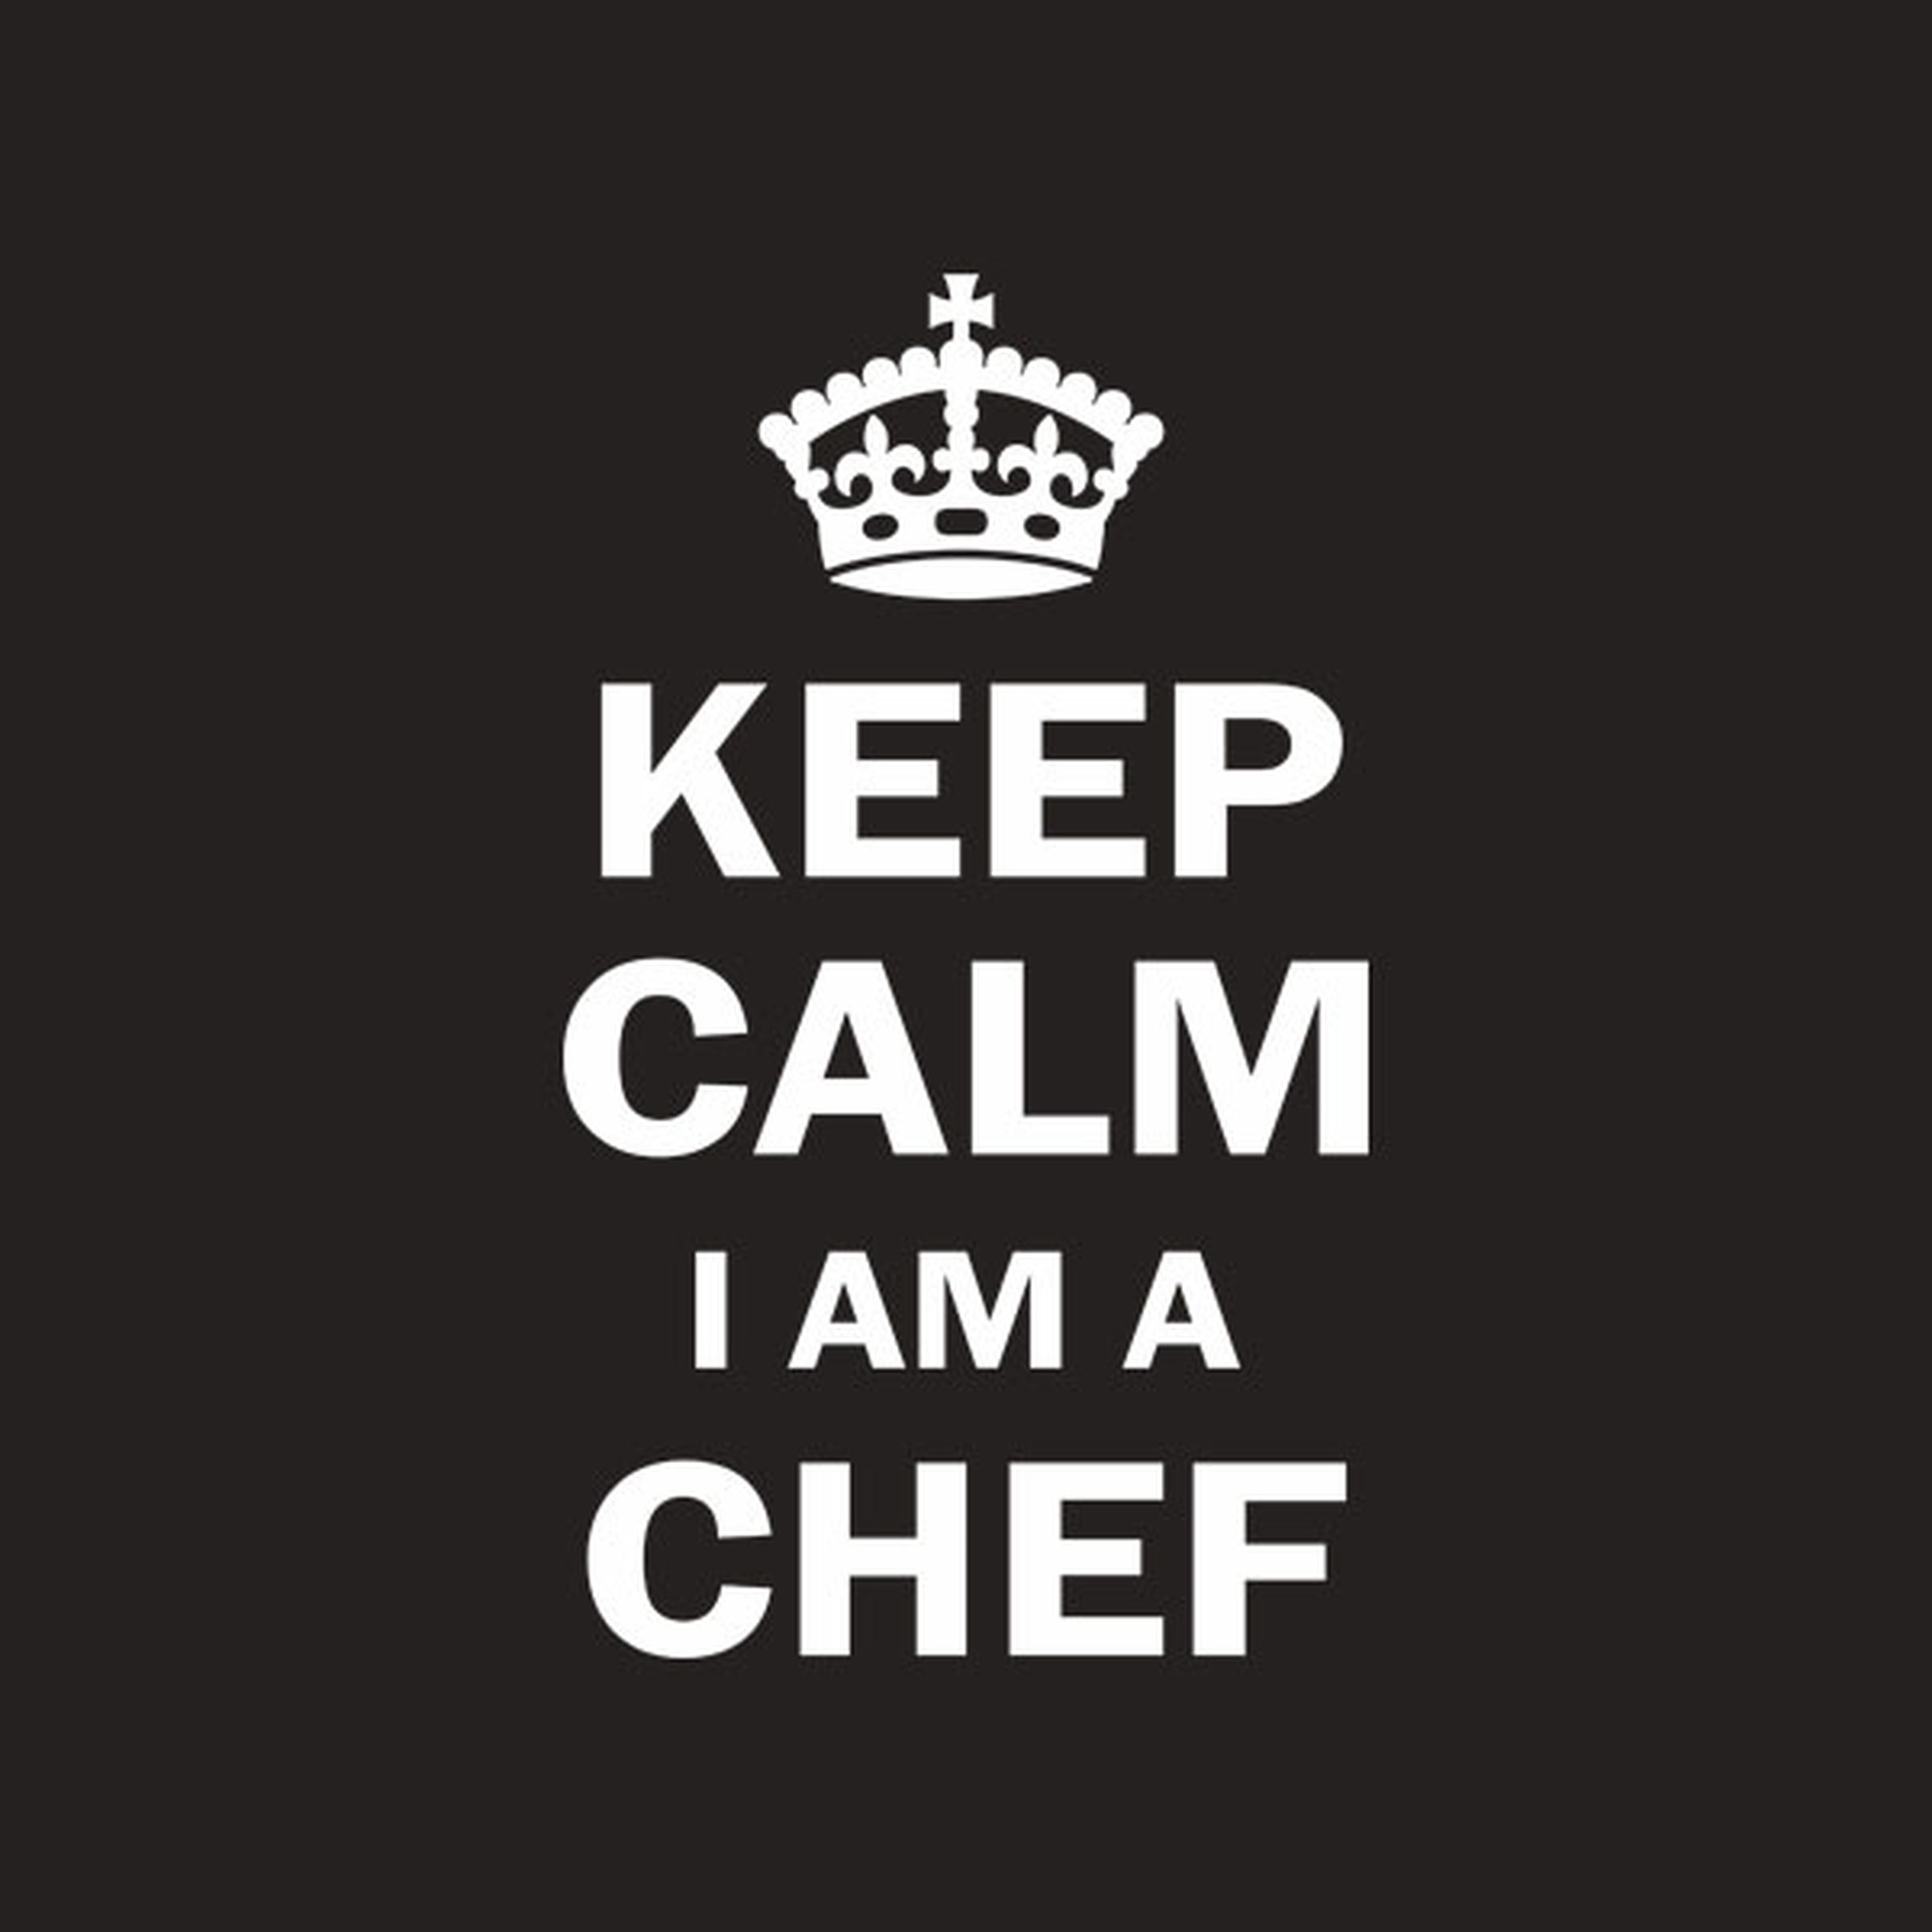 Keep calm I am a chef - T-shirt